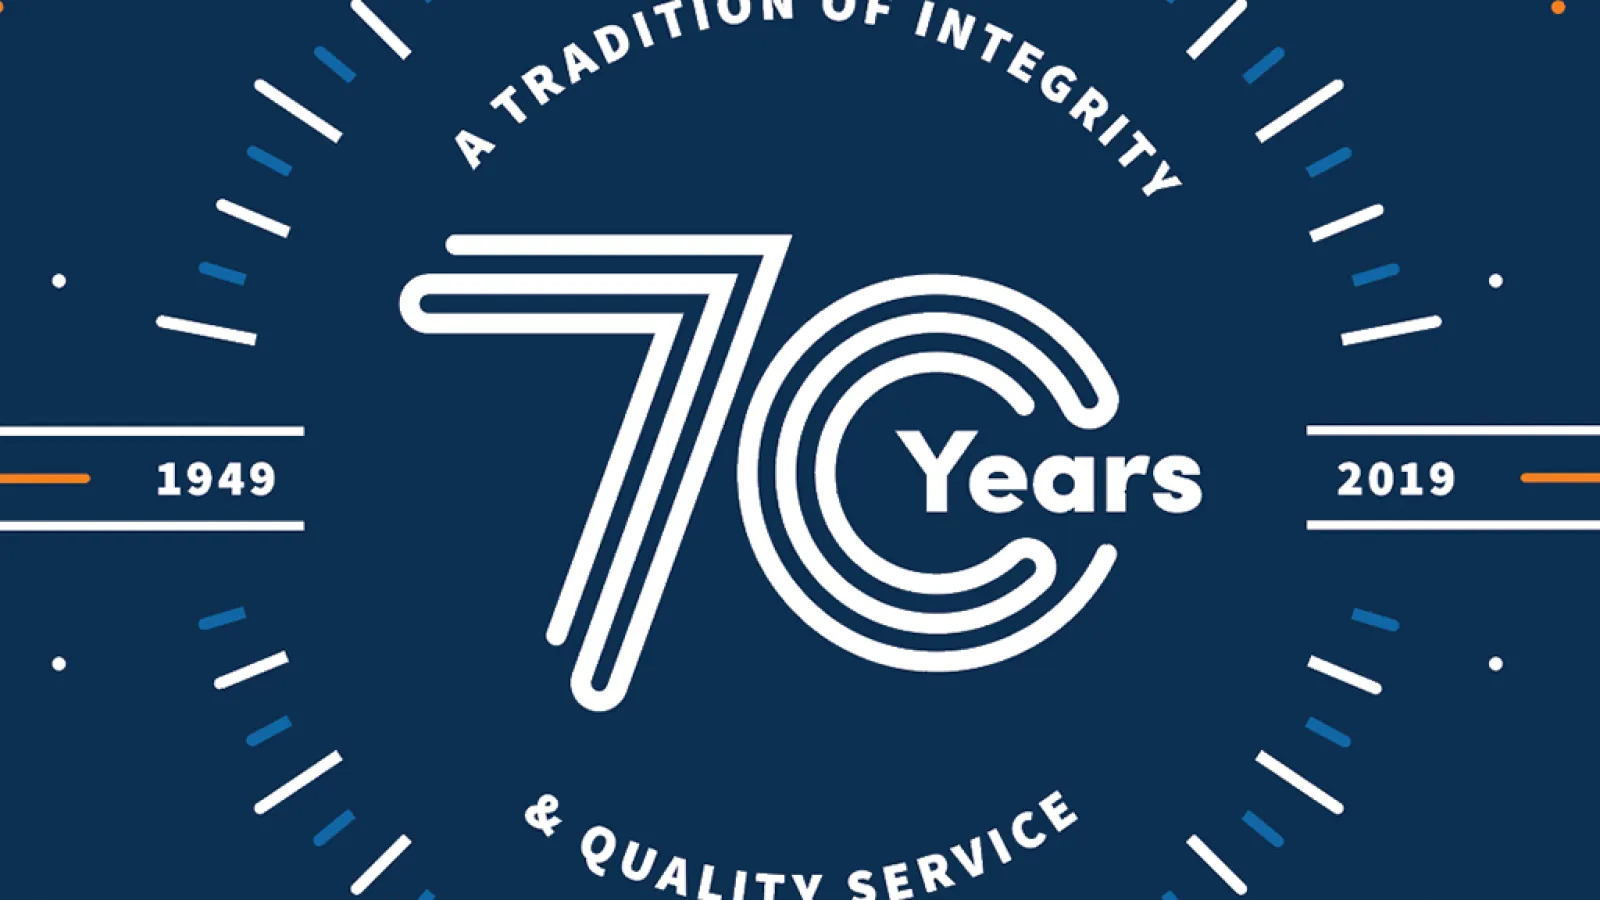 Estes Services Celebrates 70th Anniversary